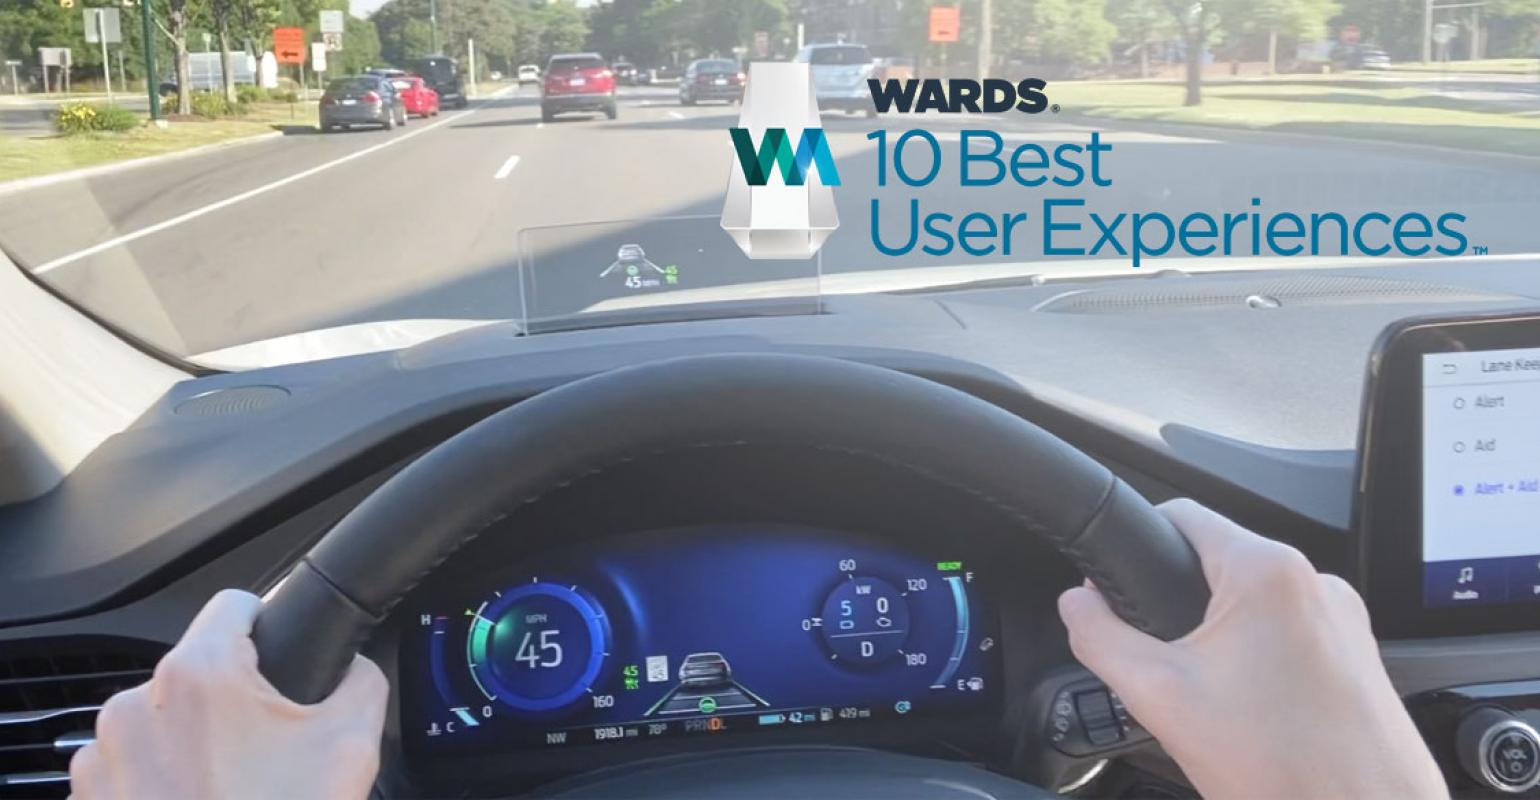 Danh sách xe có trải nghiệm người dùng tốt nhất 2020 thống kê bởi Wards Auto.